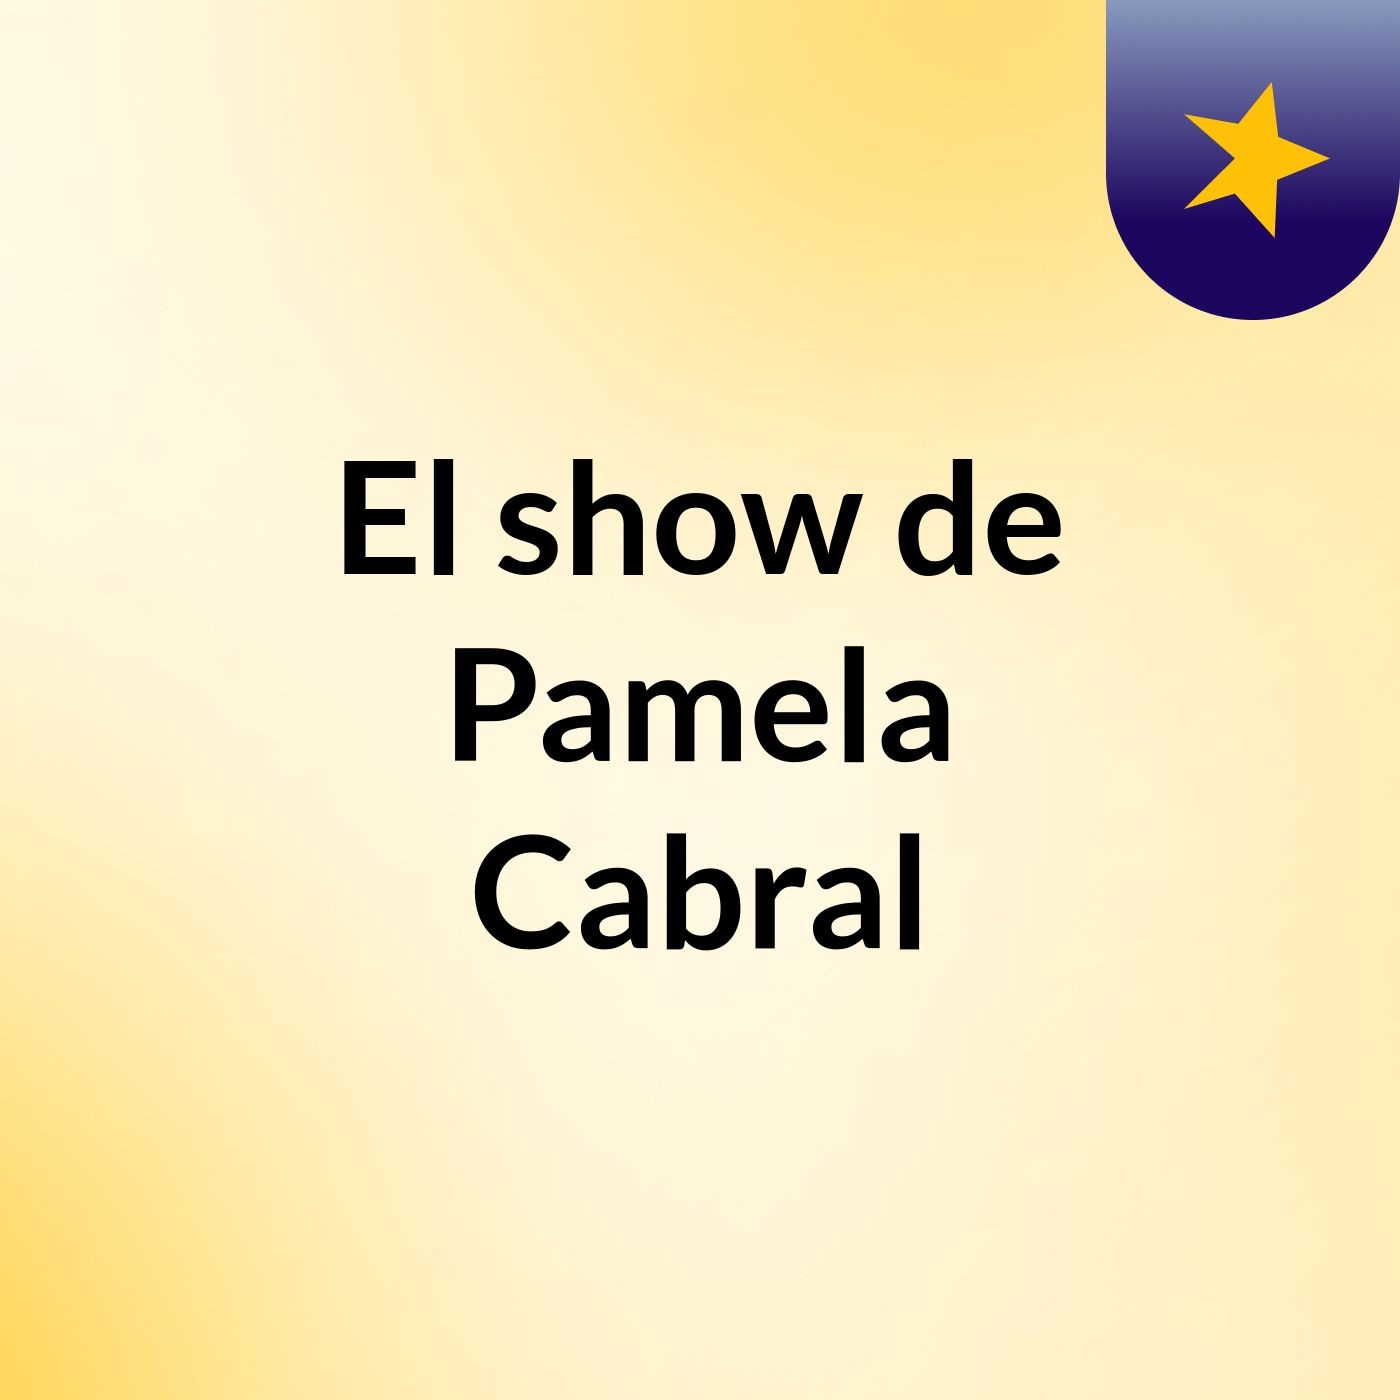 El show de Pamela Cabral